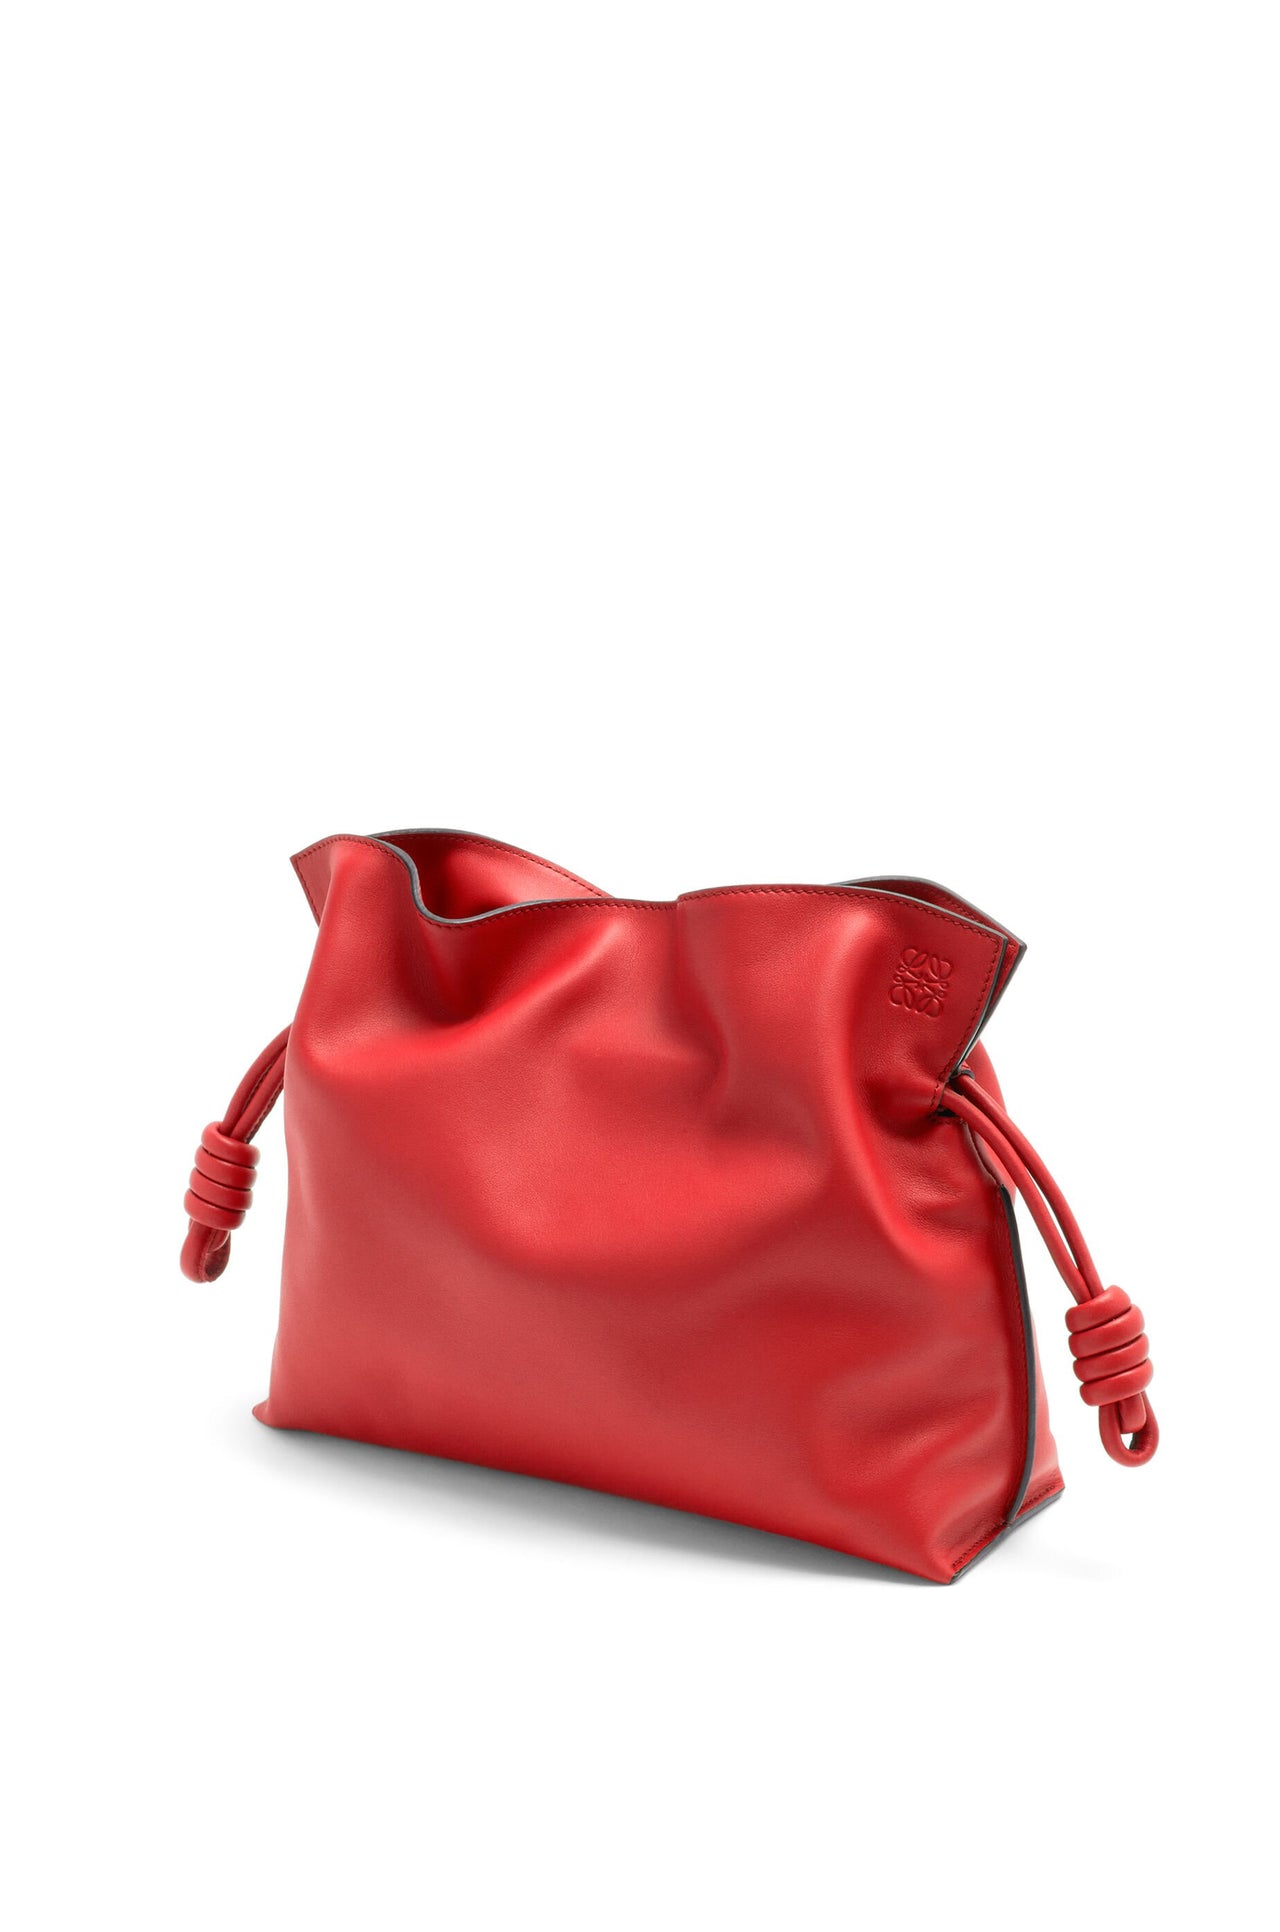 Loewe Medium Flamenco clutch in nappa calfskin (Colour: Red)